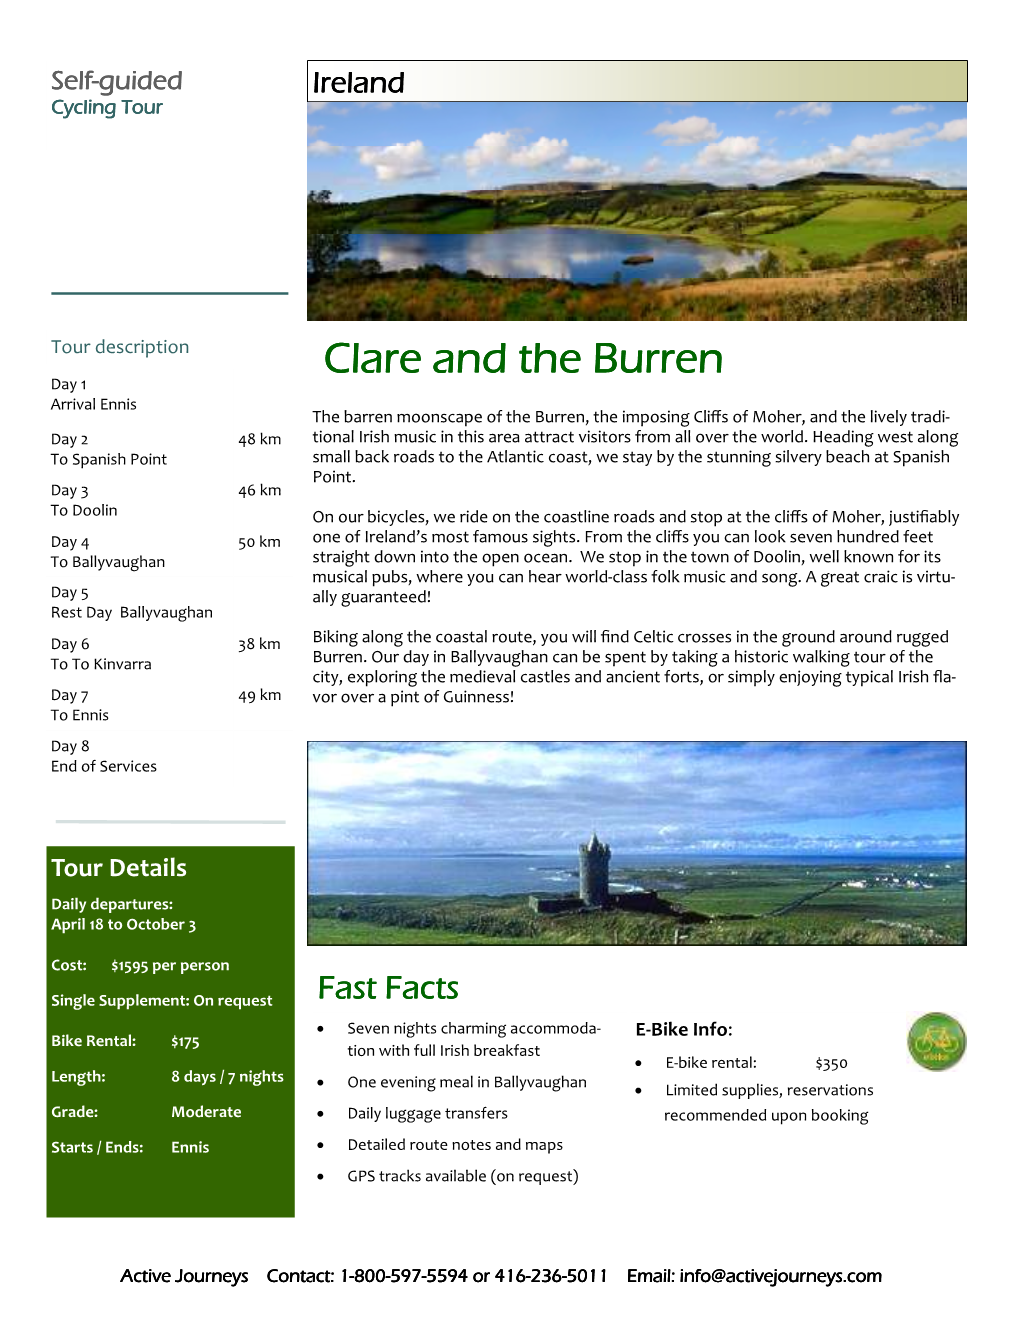 IR Clare and the Burren SG C.Pub